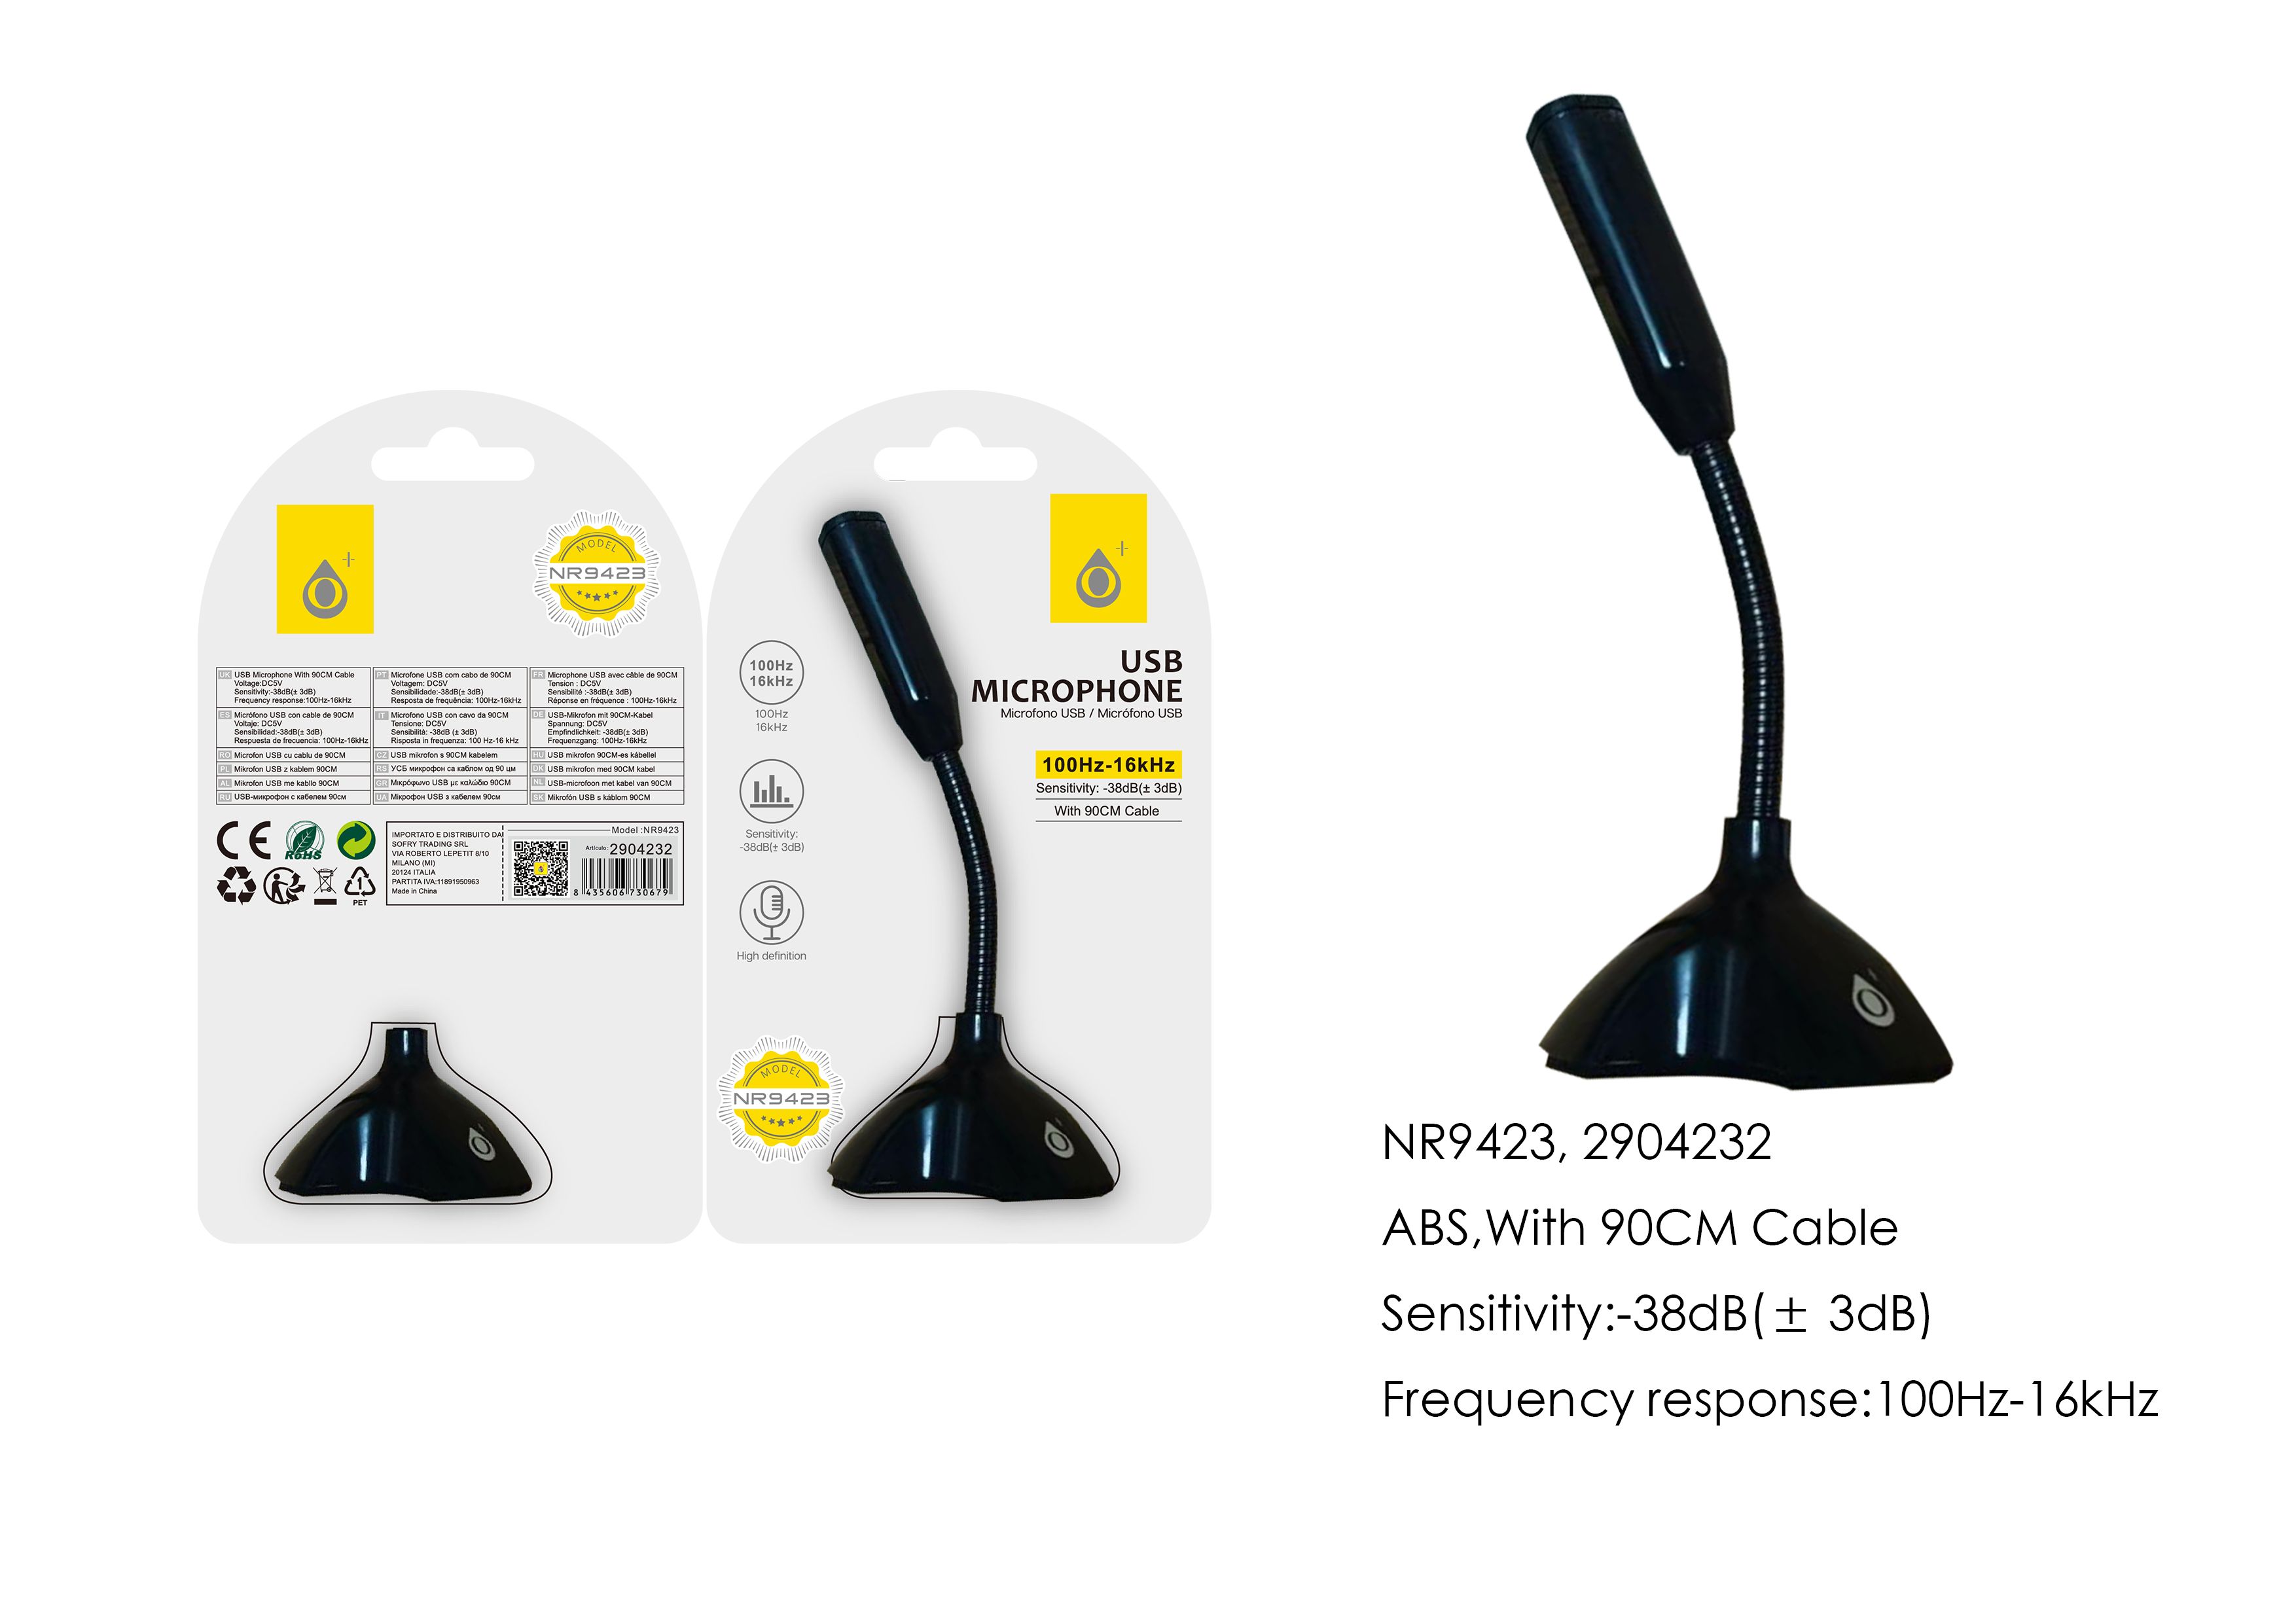 NR9423 NE Microfono USB con Soporte, Frecuncia 100Hz-16KHz, Con cable  de carga 90cm, Negro